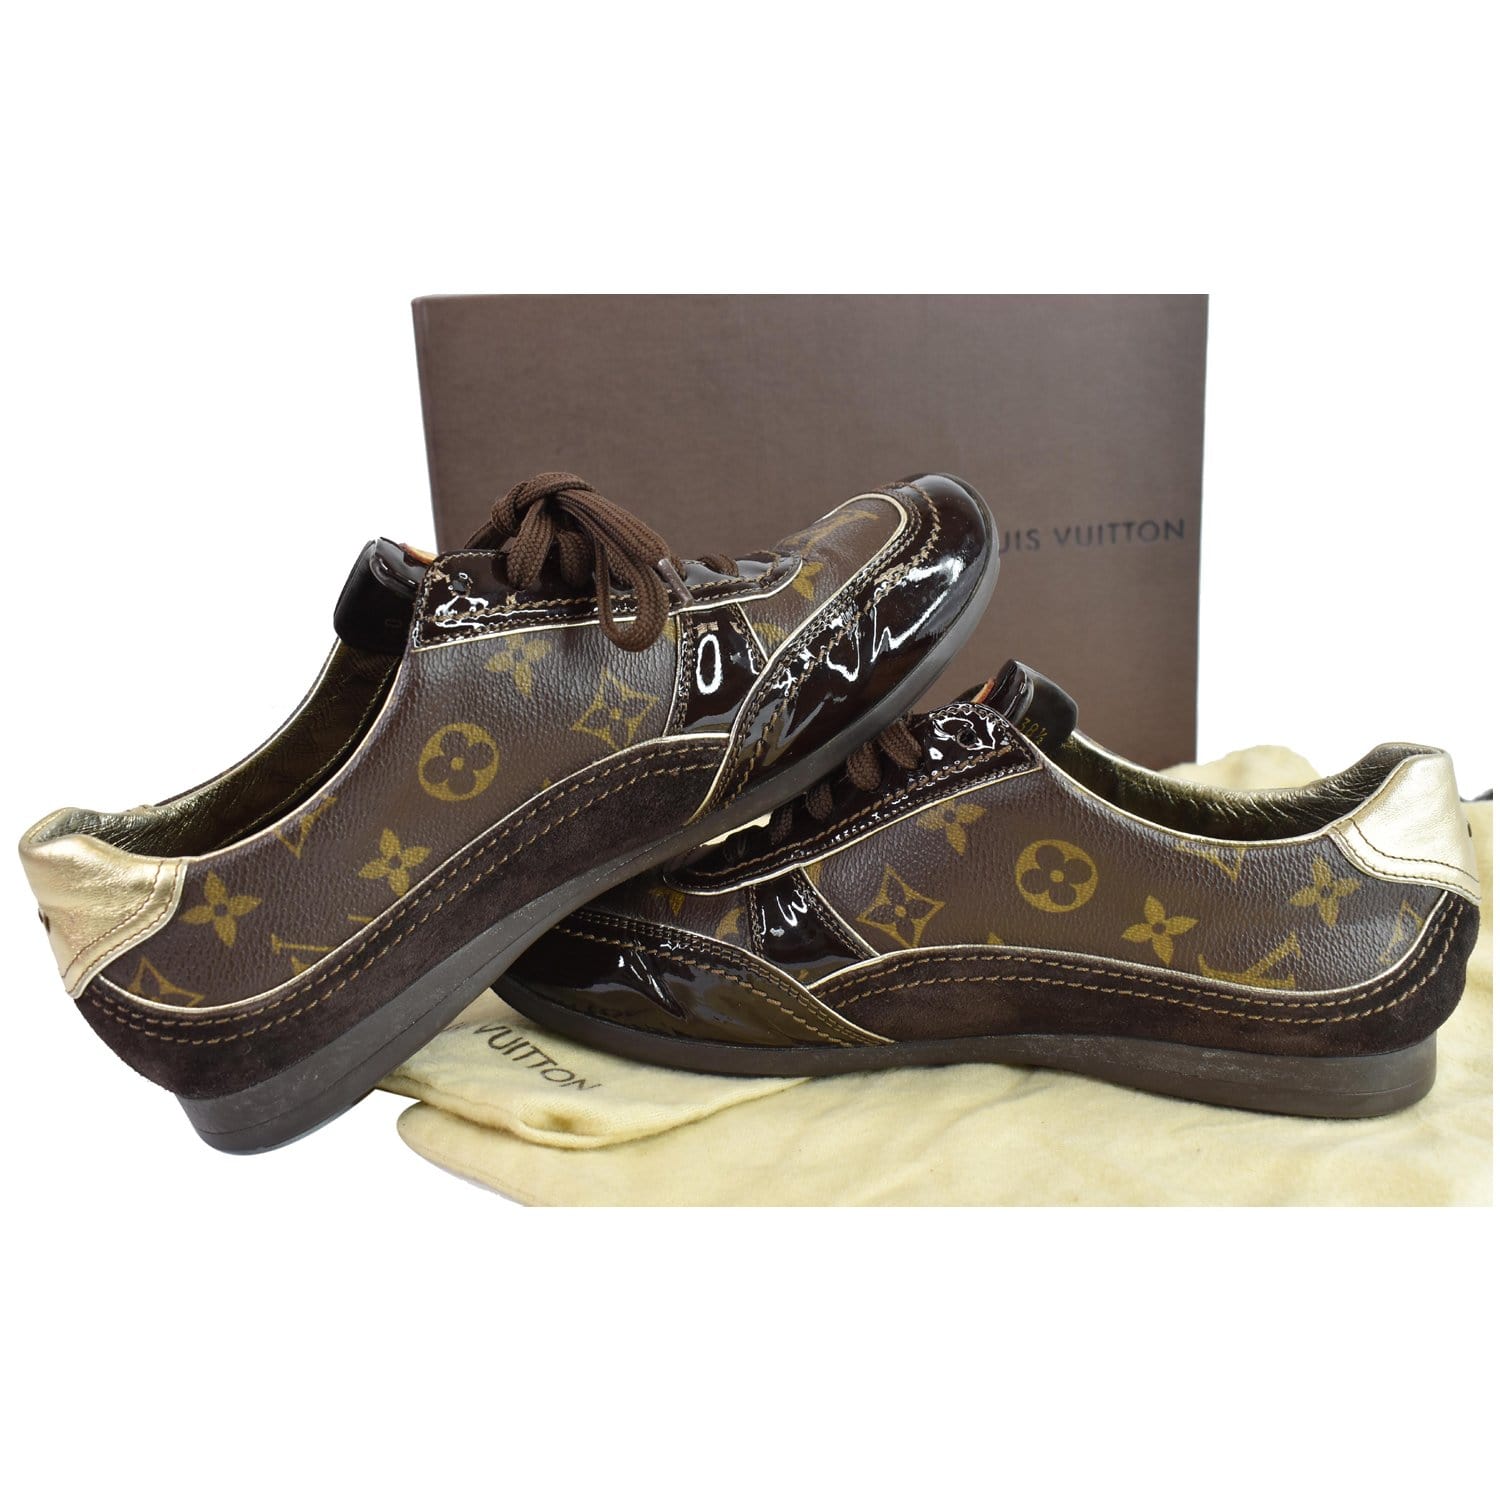 Vintage Authentic Louis Vuitton Zephyr Sneakers Brown Size 8.5 RARE